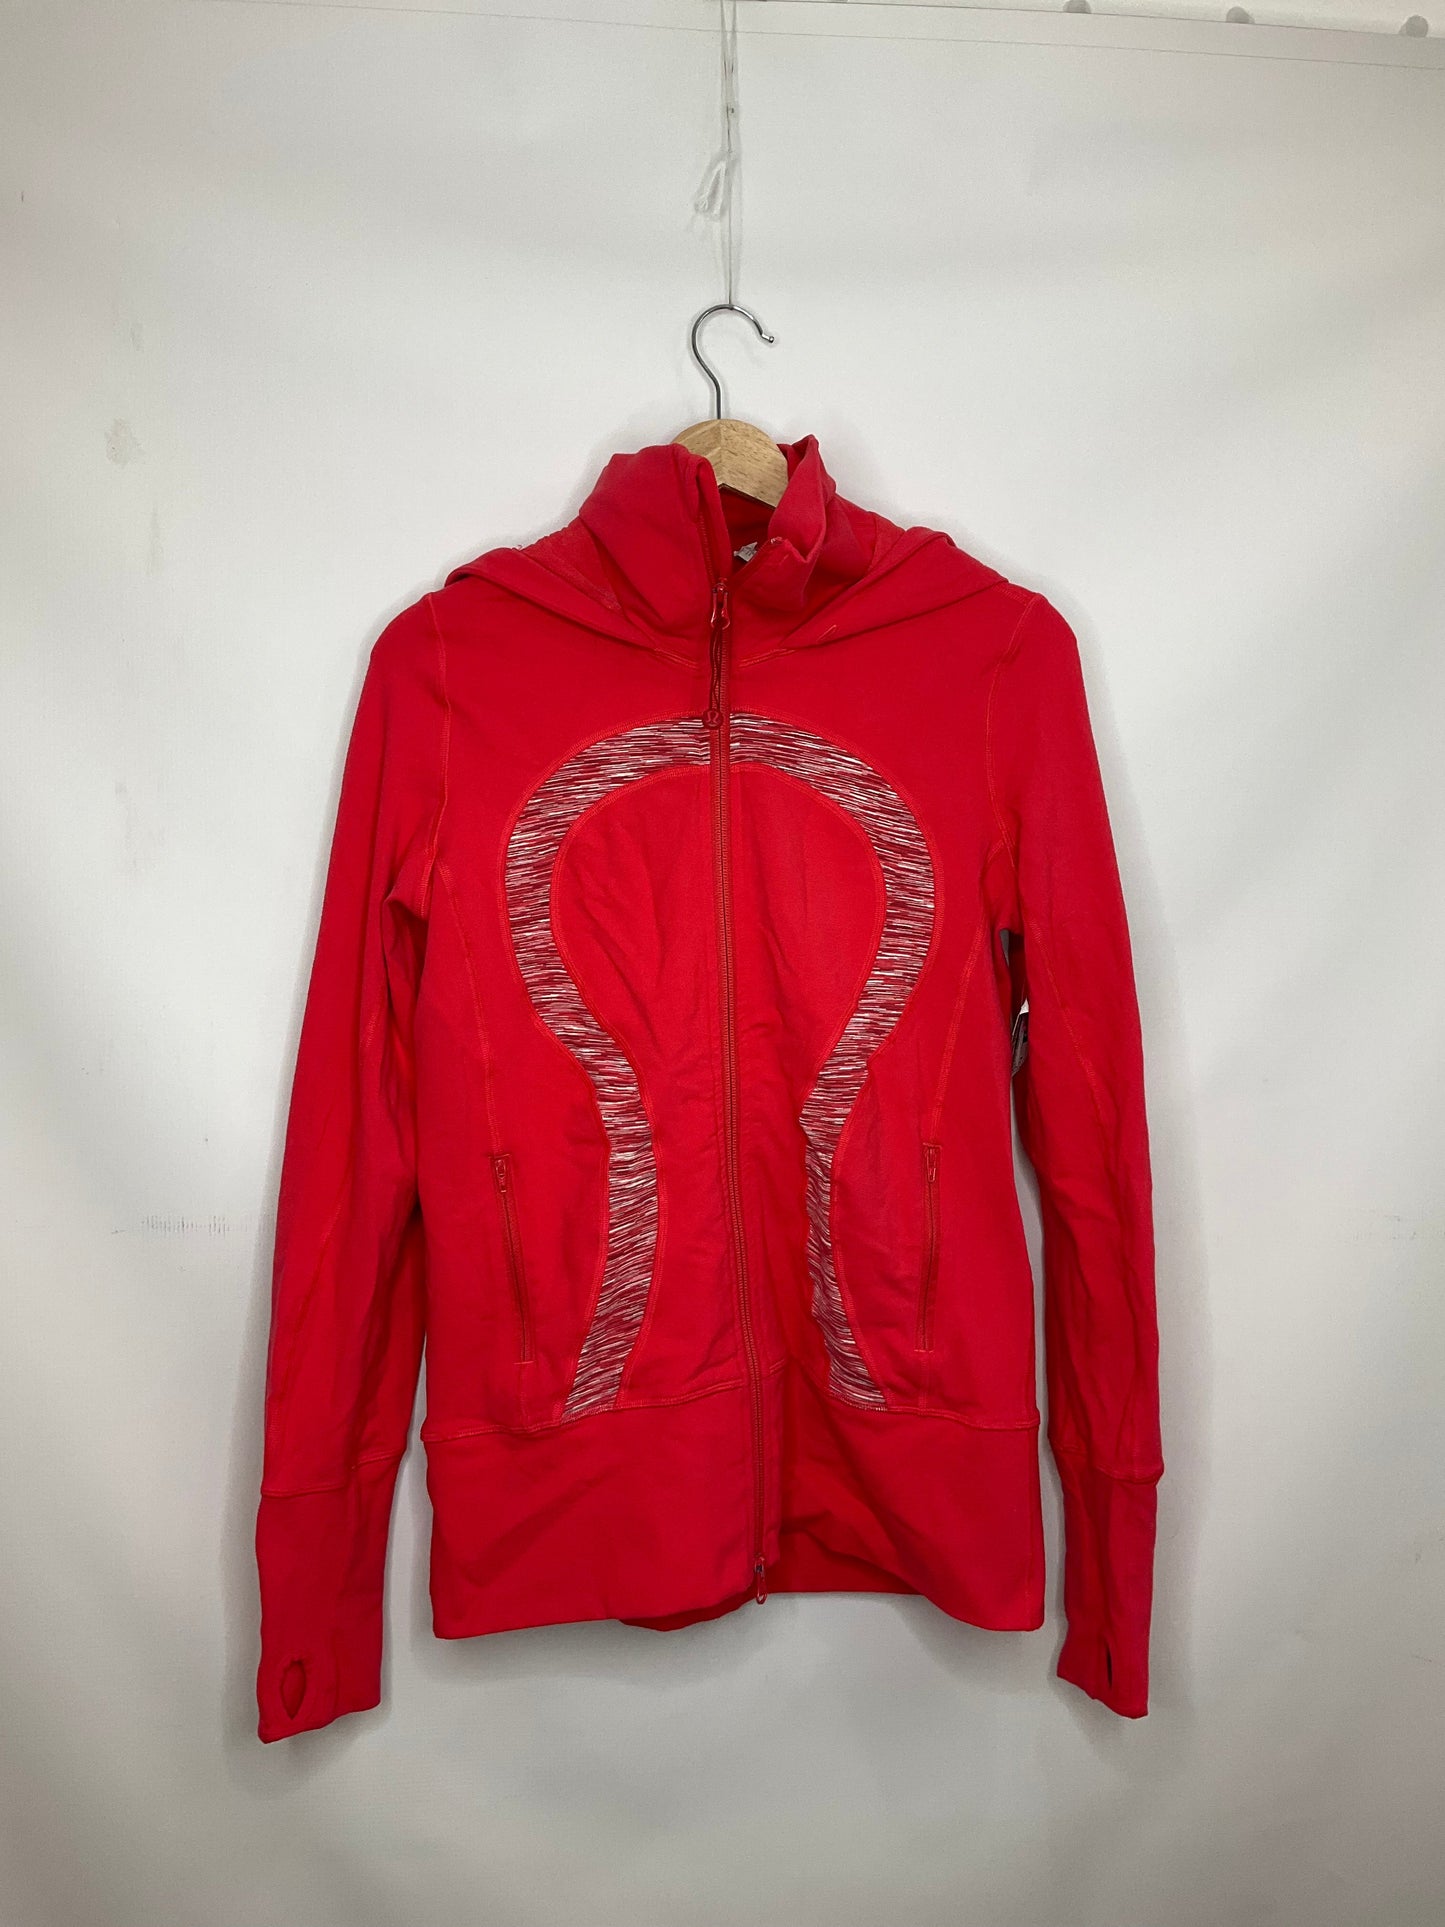 Red Athletic Jacket Lululemon, Size 8